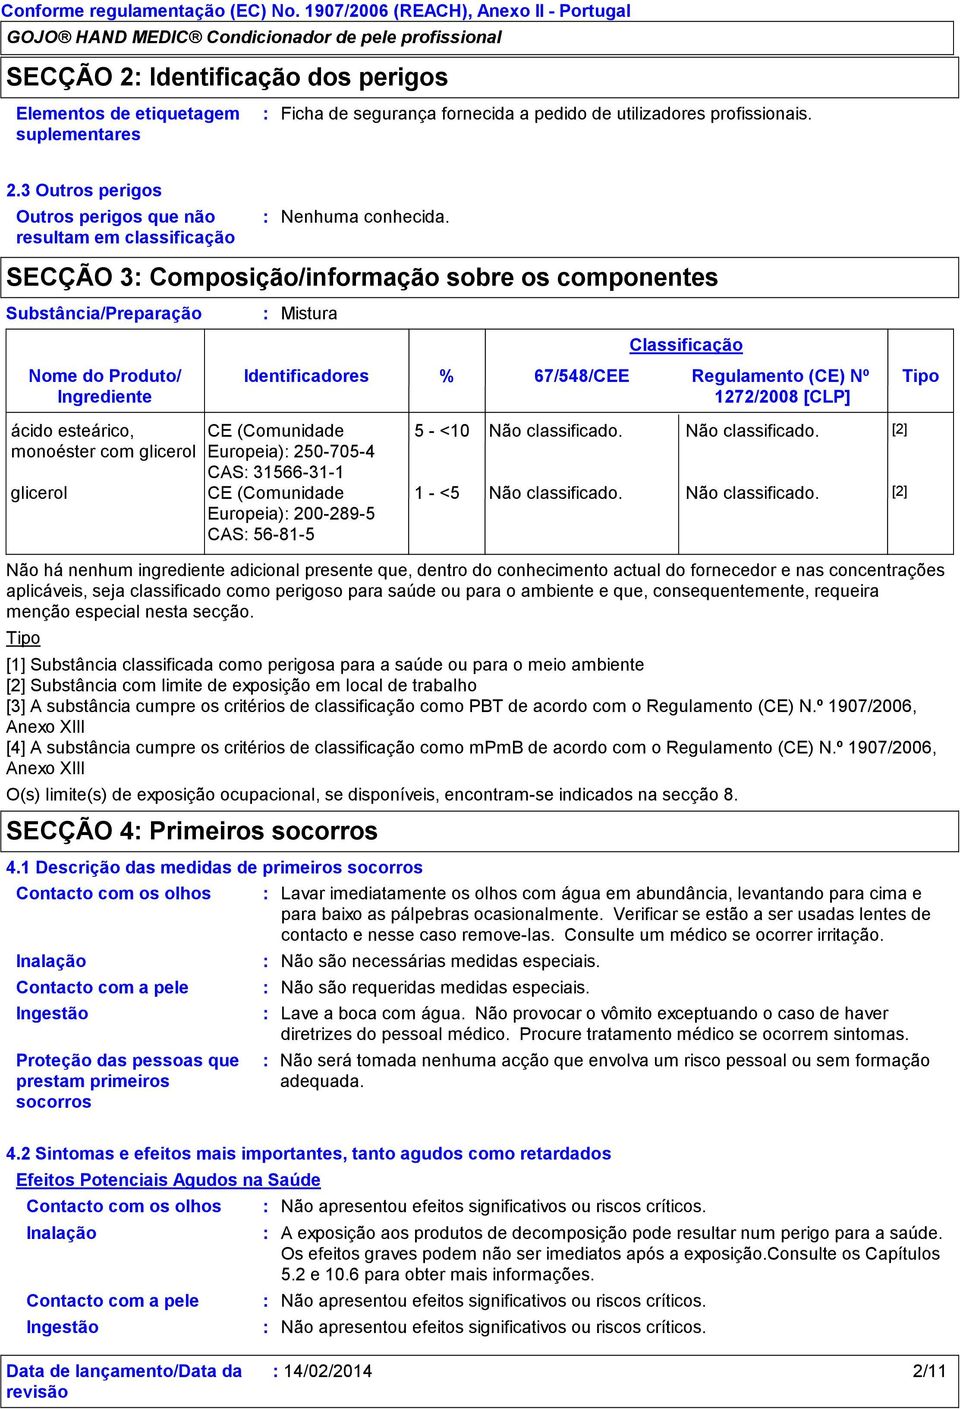 SECÇÃO 3 Composição/informação sobre os componentes ácido esteárico, monoéster com glicerol glicerol Mistura Identificadores CE (Comunidade Europeia) 2507054 CAS 31566311 CE (Comunidade Europeia)